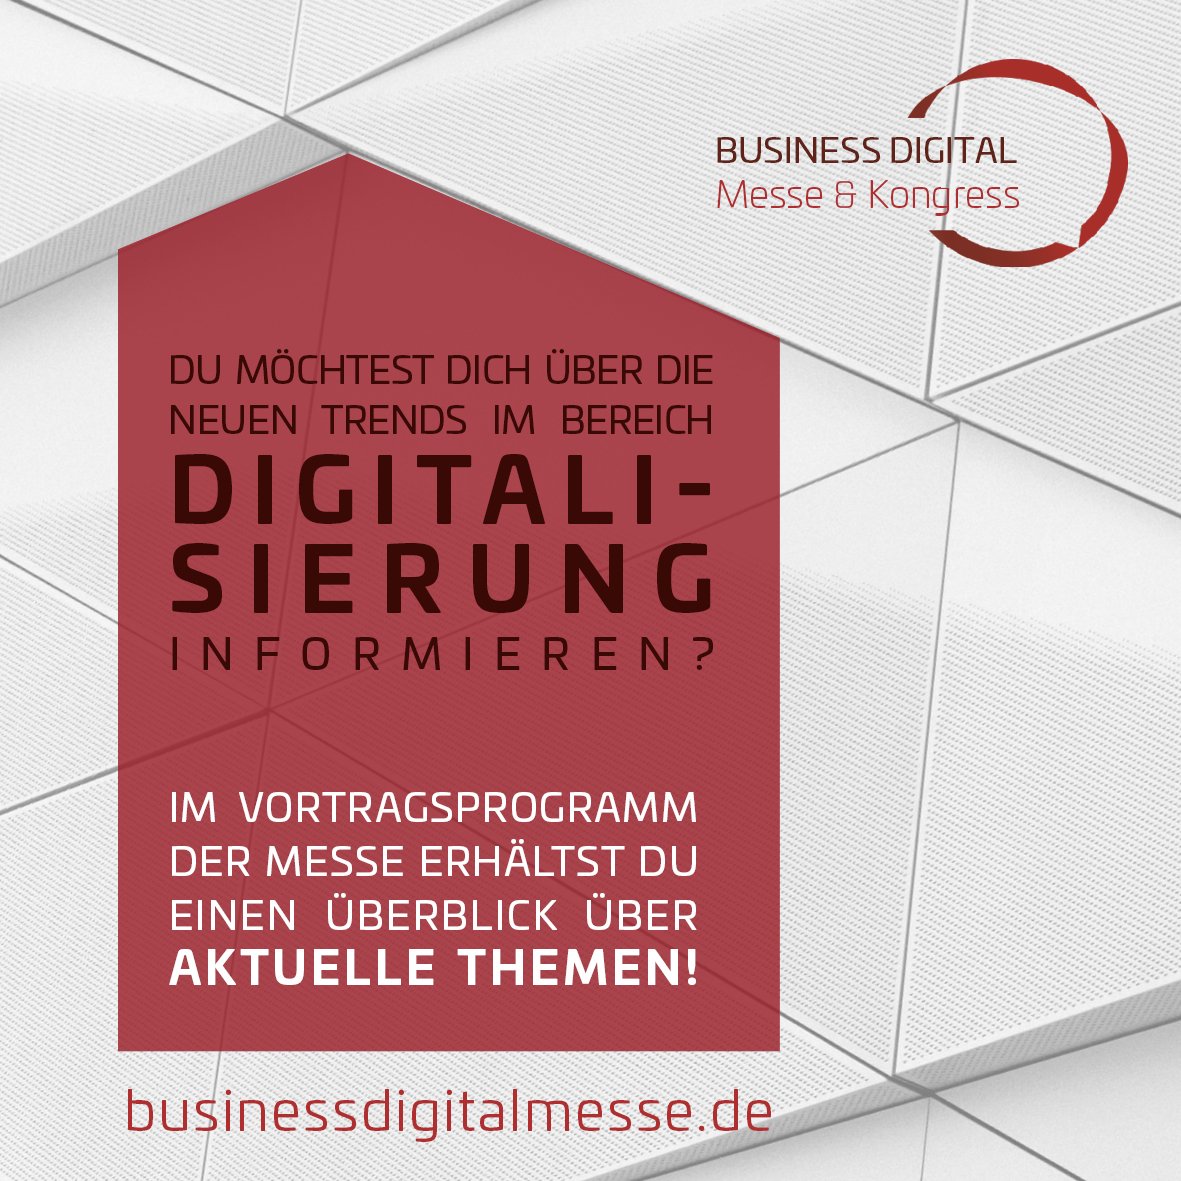 👏Trendsetter kommen am 1️⃣6️⃣. Mai zur Business Digital〽️

Für mehr Messe-Infos: businessdigitalmesse.de/messe/

#digitalwakeup #getdigital #Digitalisierung #Leipzig #BusinessDigital